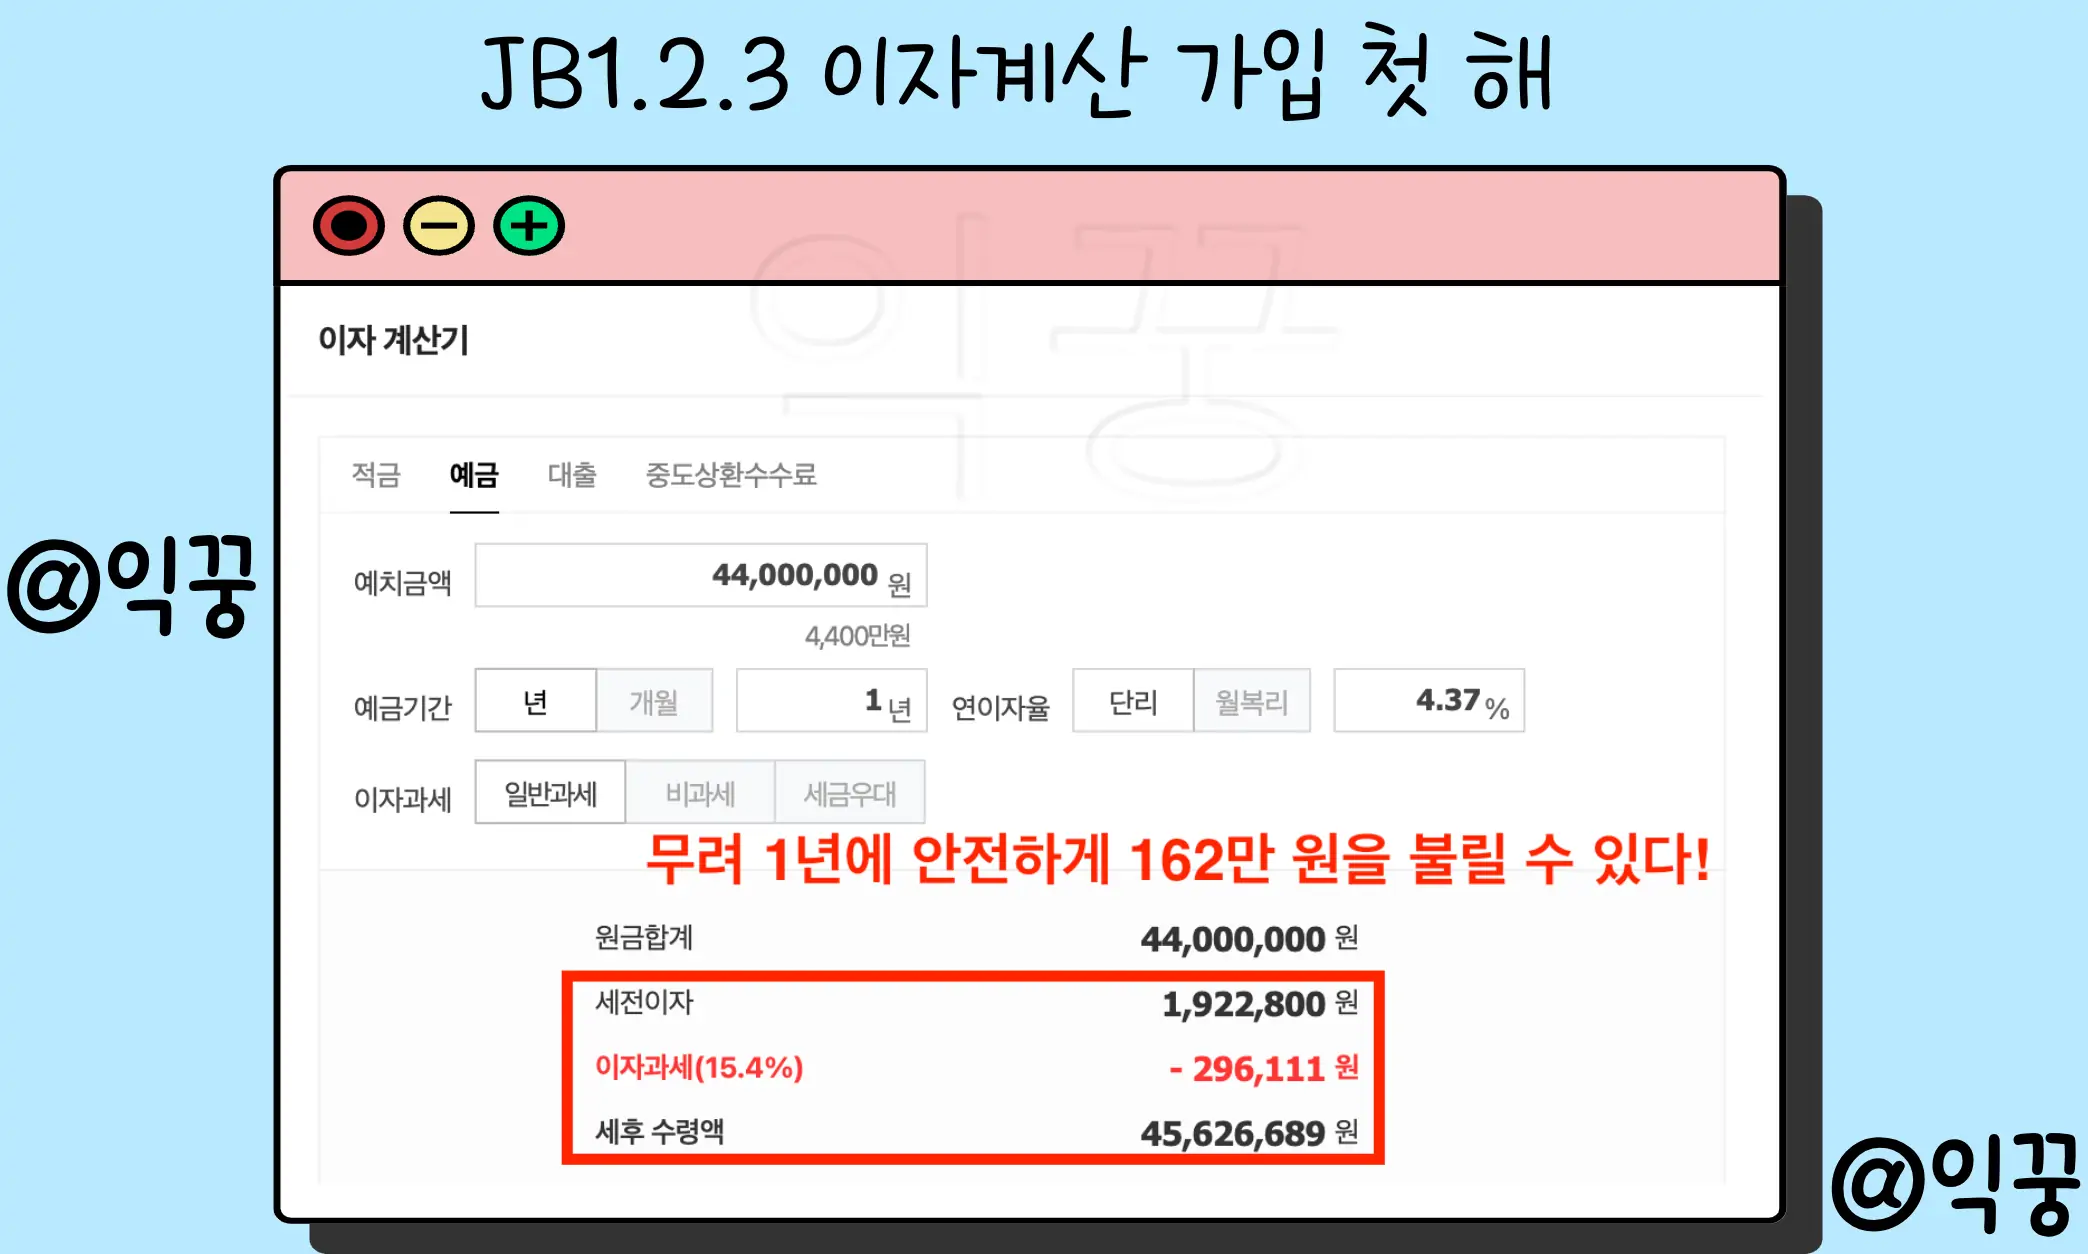 전북은행 JB123 정기예금 1금융권 고금리 특판 금리 이자계산3